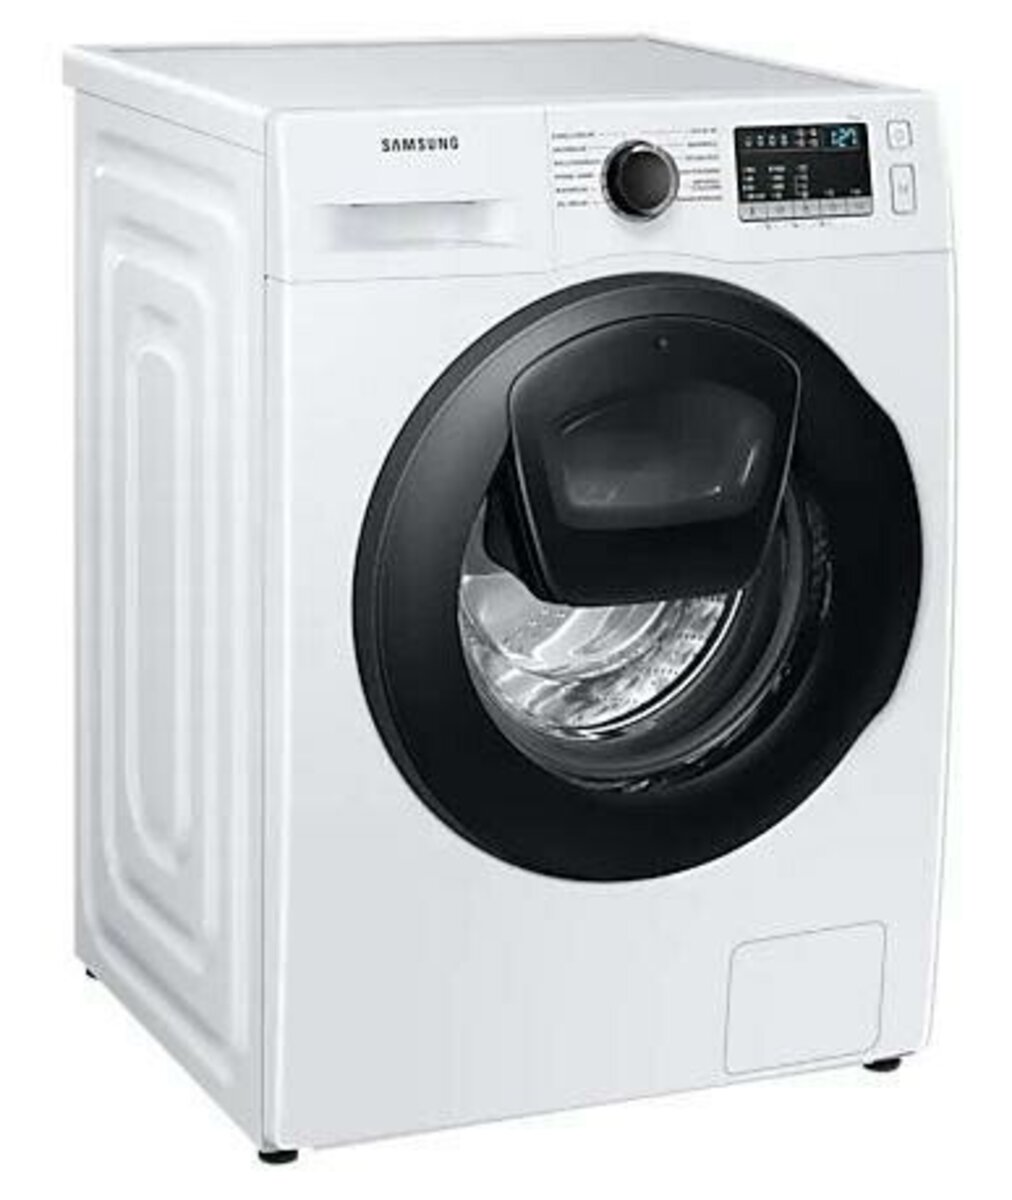 Bild 2 von Samsung WW71T4543AE/EG Waschmaschine (Frontlader, freistehend, 7 kg, D, 1.400 U/Min, AddWash, Mengenautomatik, Trommelreinigung, WW4500T)